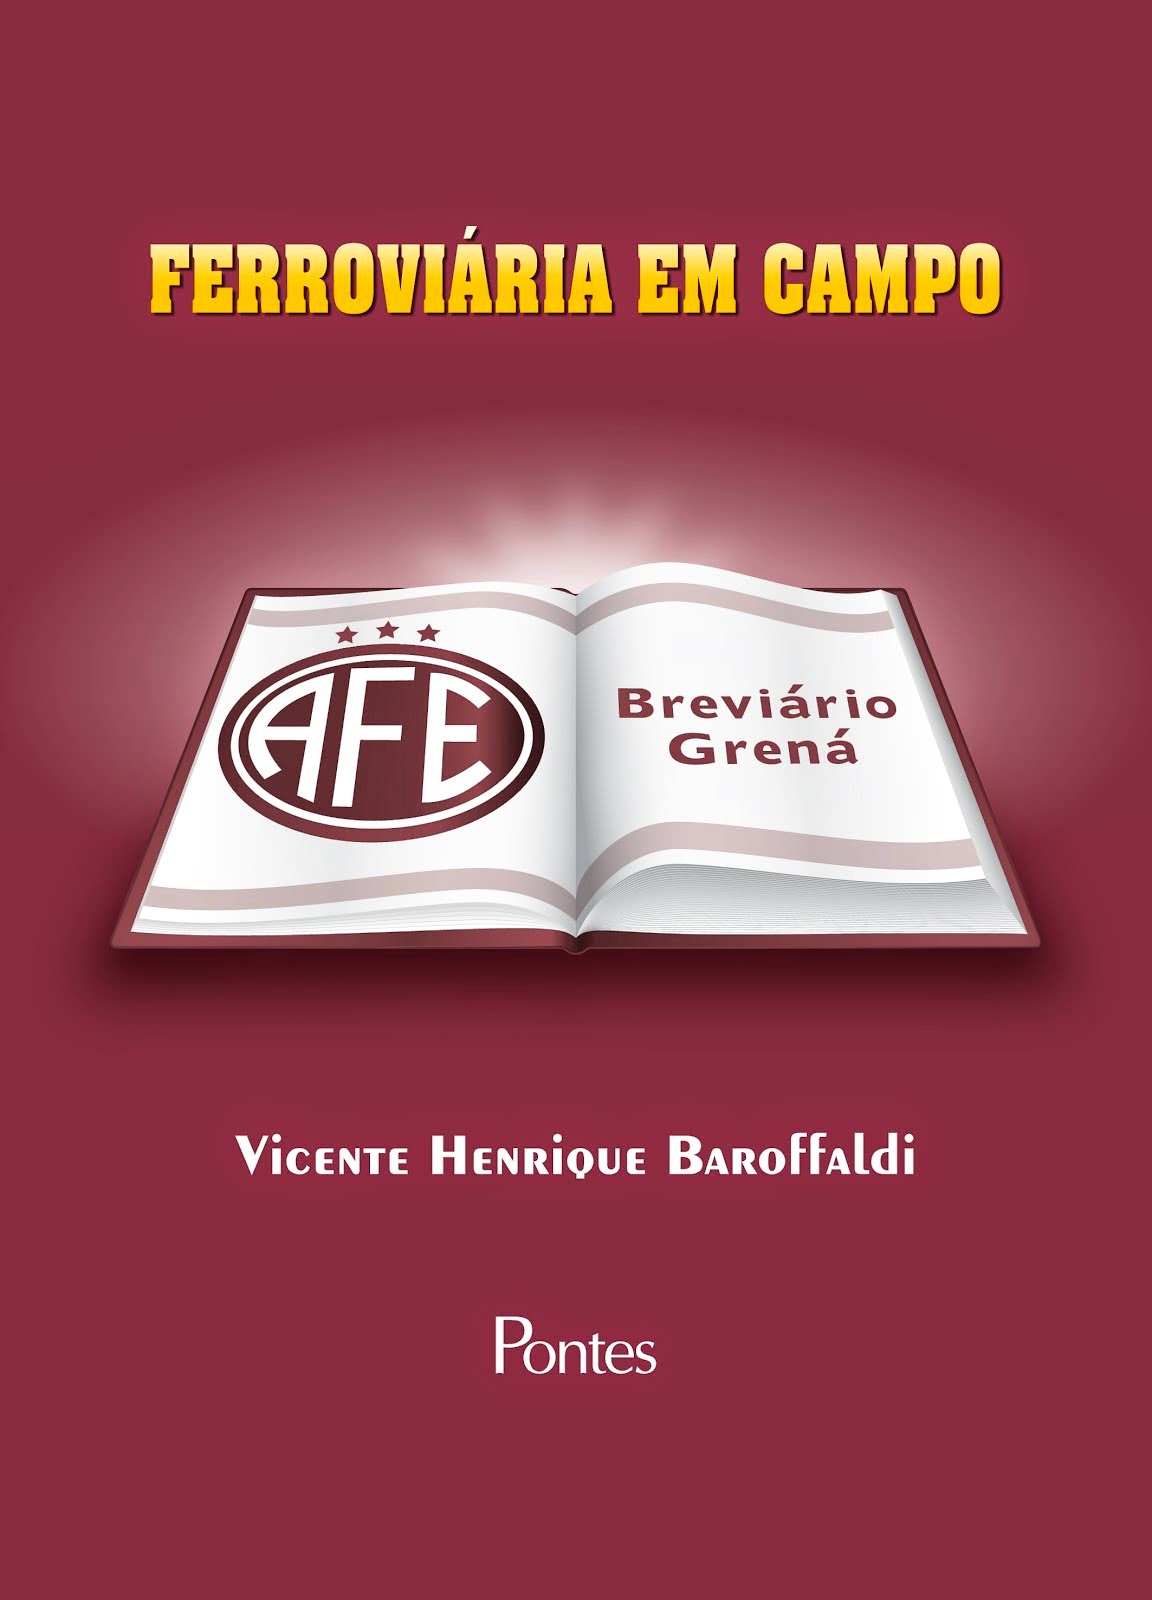 "FERROVIÁRIA EM CAMPO  -  BREVIÁRIO GRENÁ"